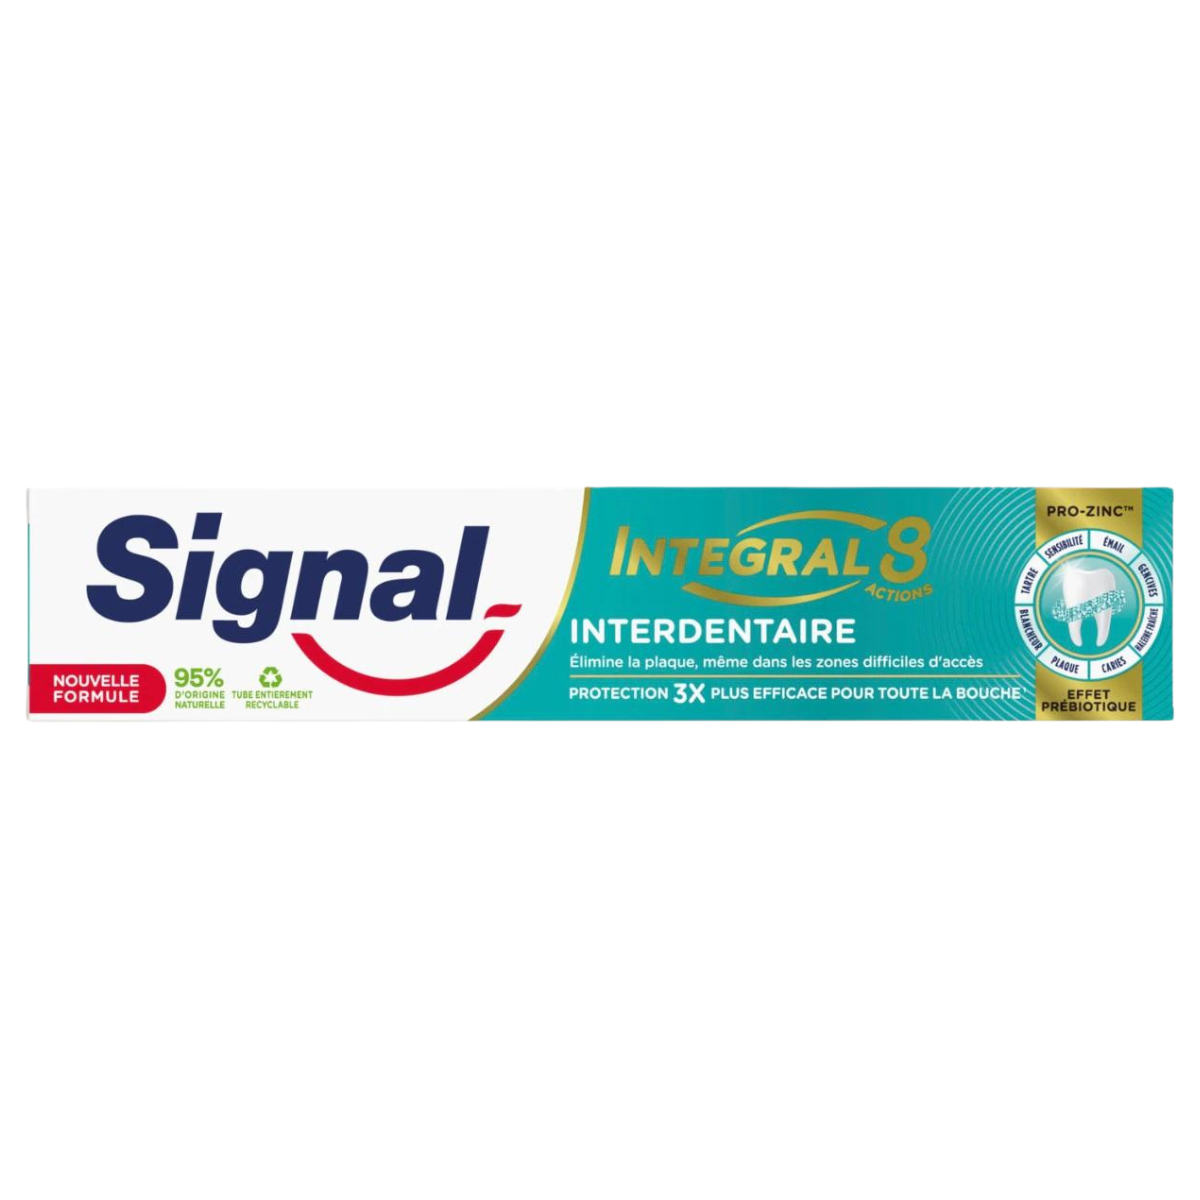 Dentifrice Signal Intégral 8 Interdentaire